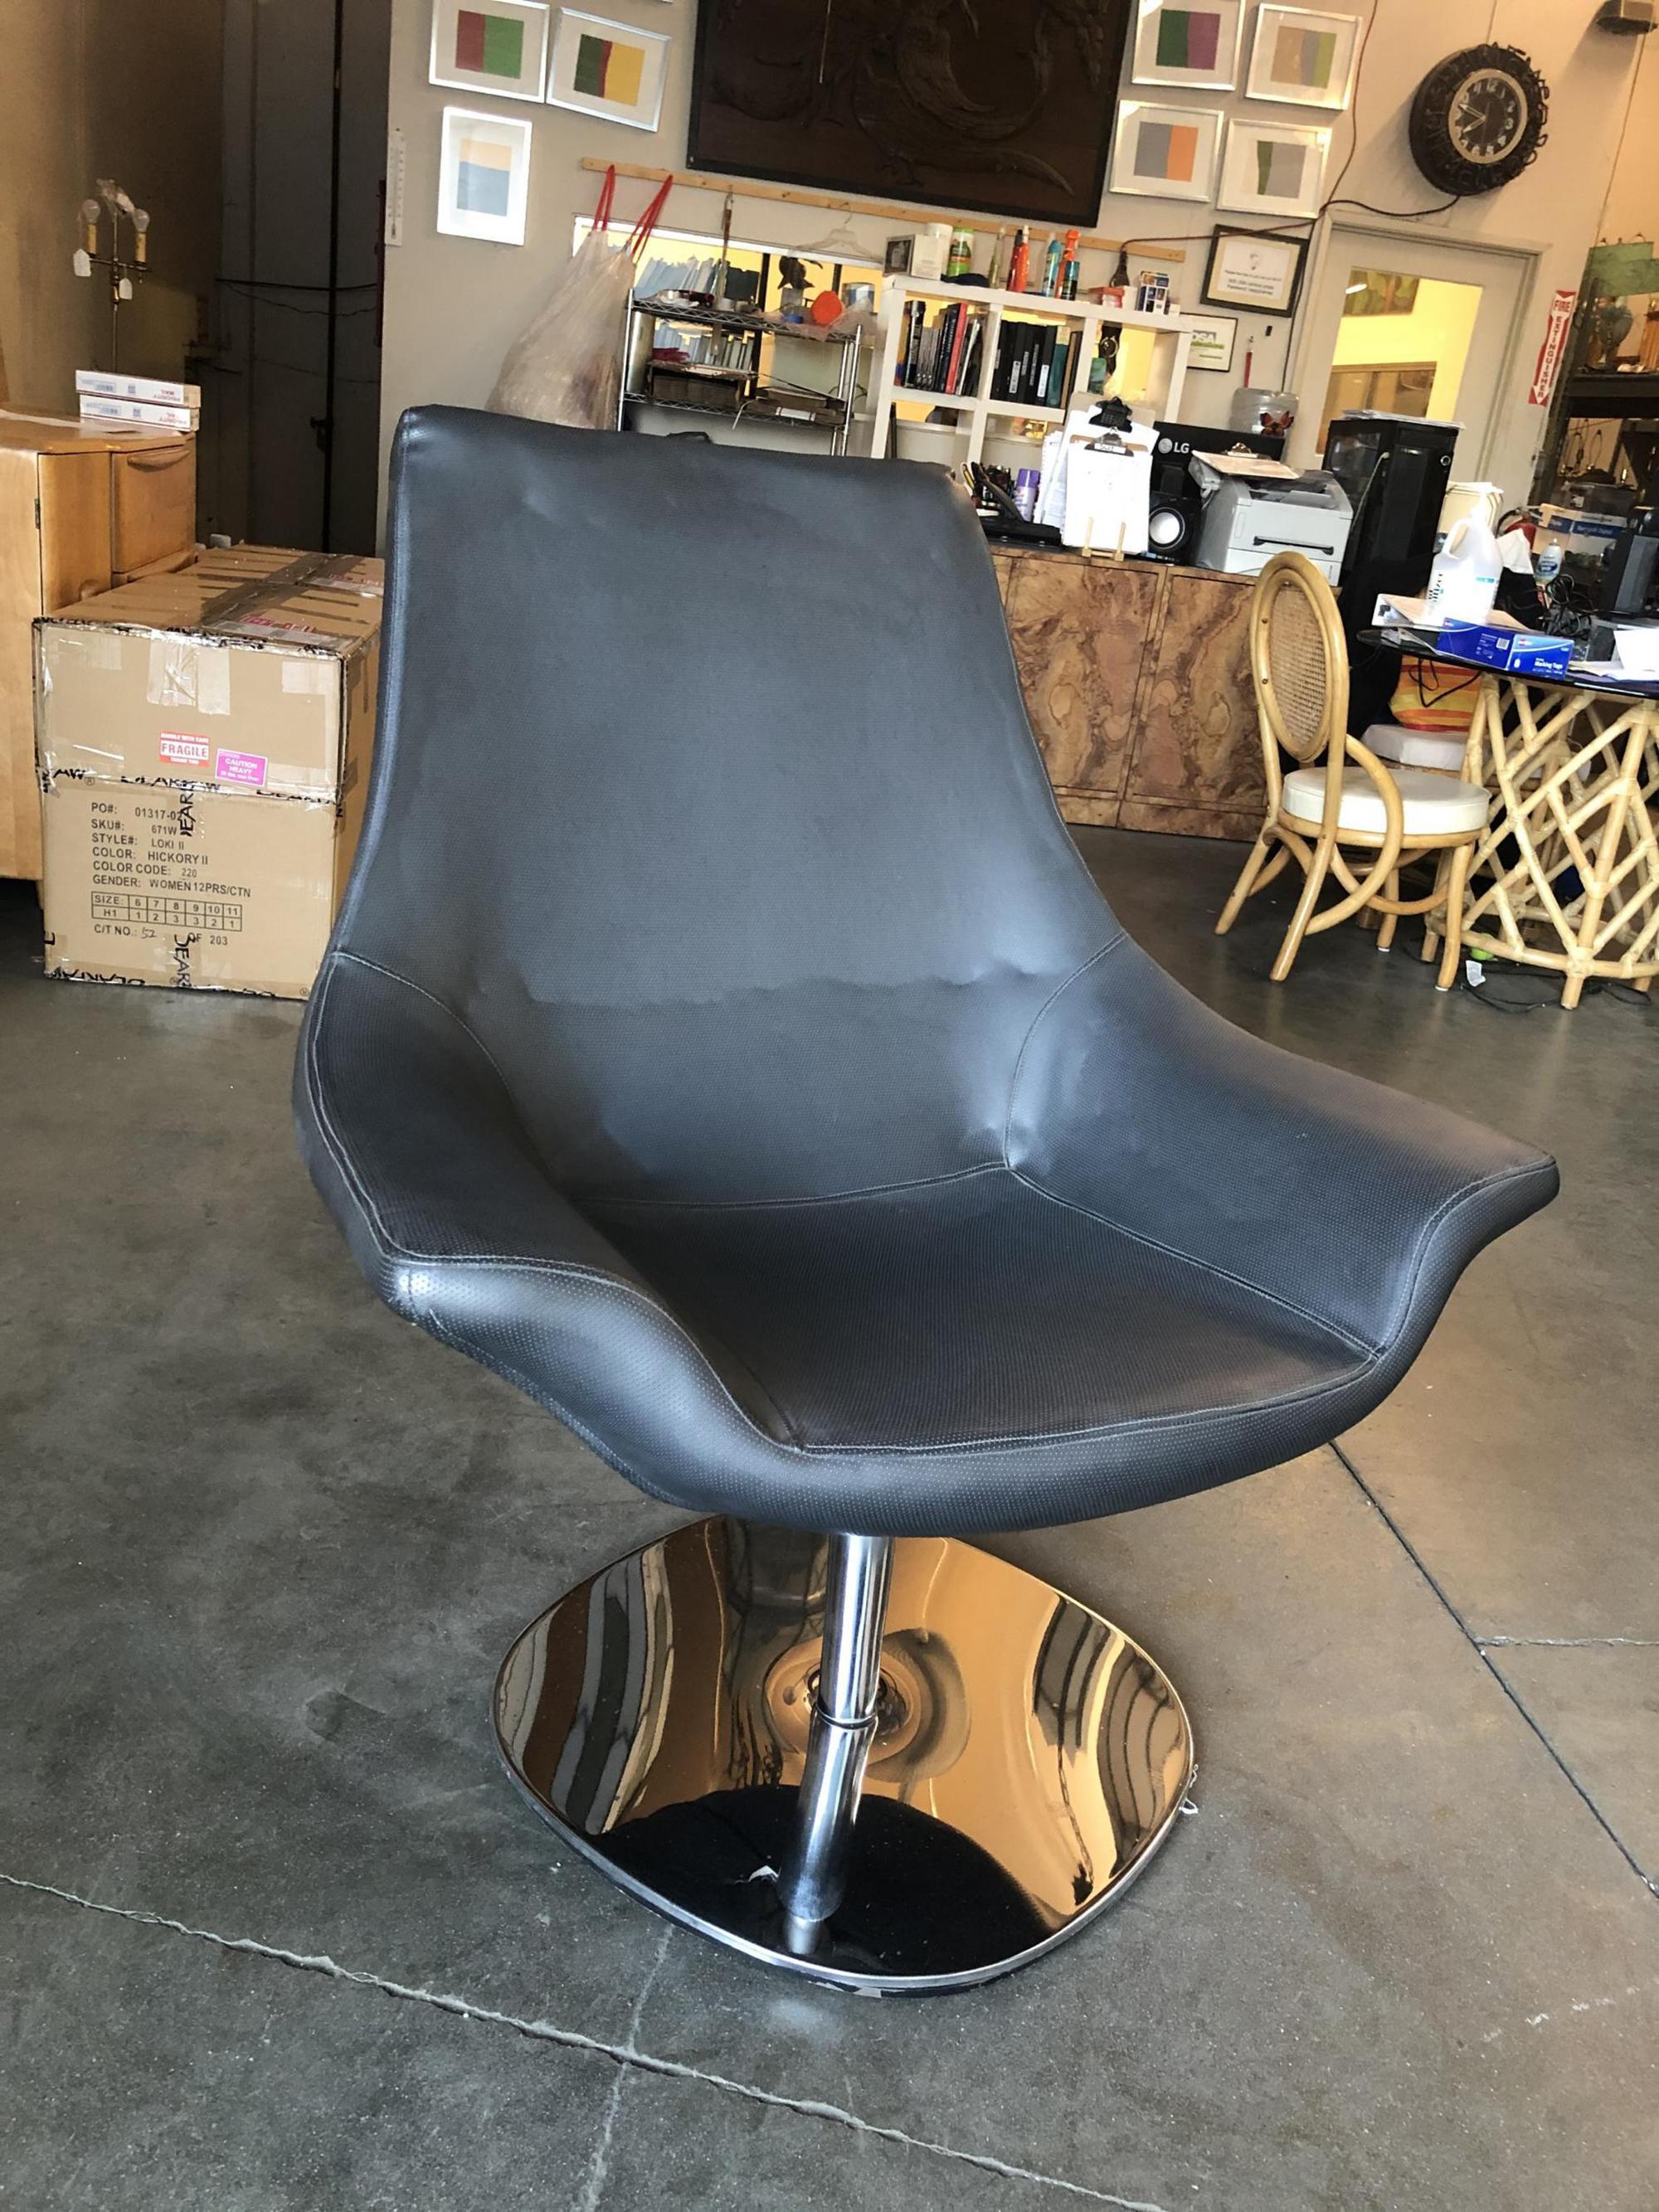 Chaise de capitaine en simili-cuir italienne très moderne et futuriste, avec une base chromée. Cette chaise serait parfaite dans une pièce de style Memphis, vers la fin des années 1980.